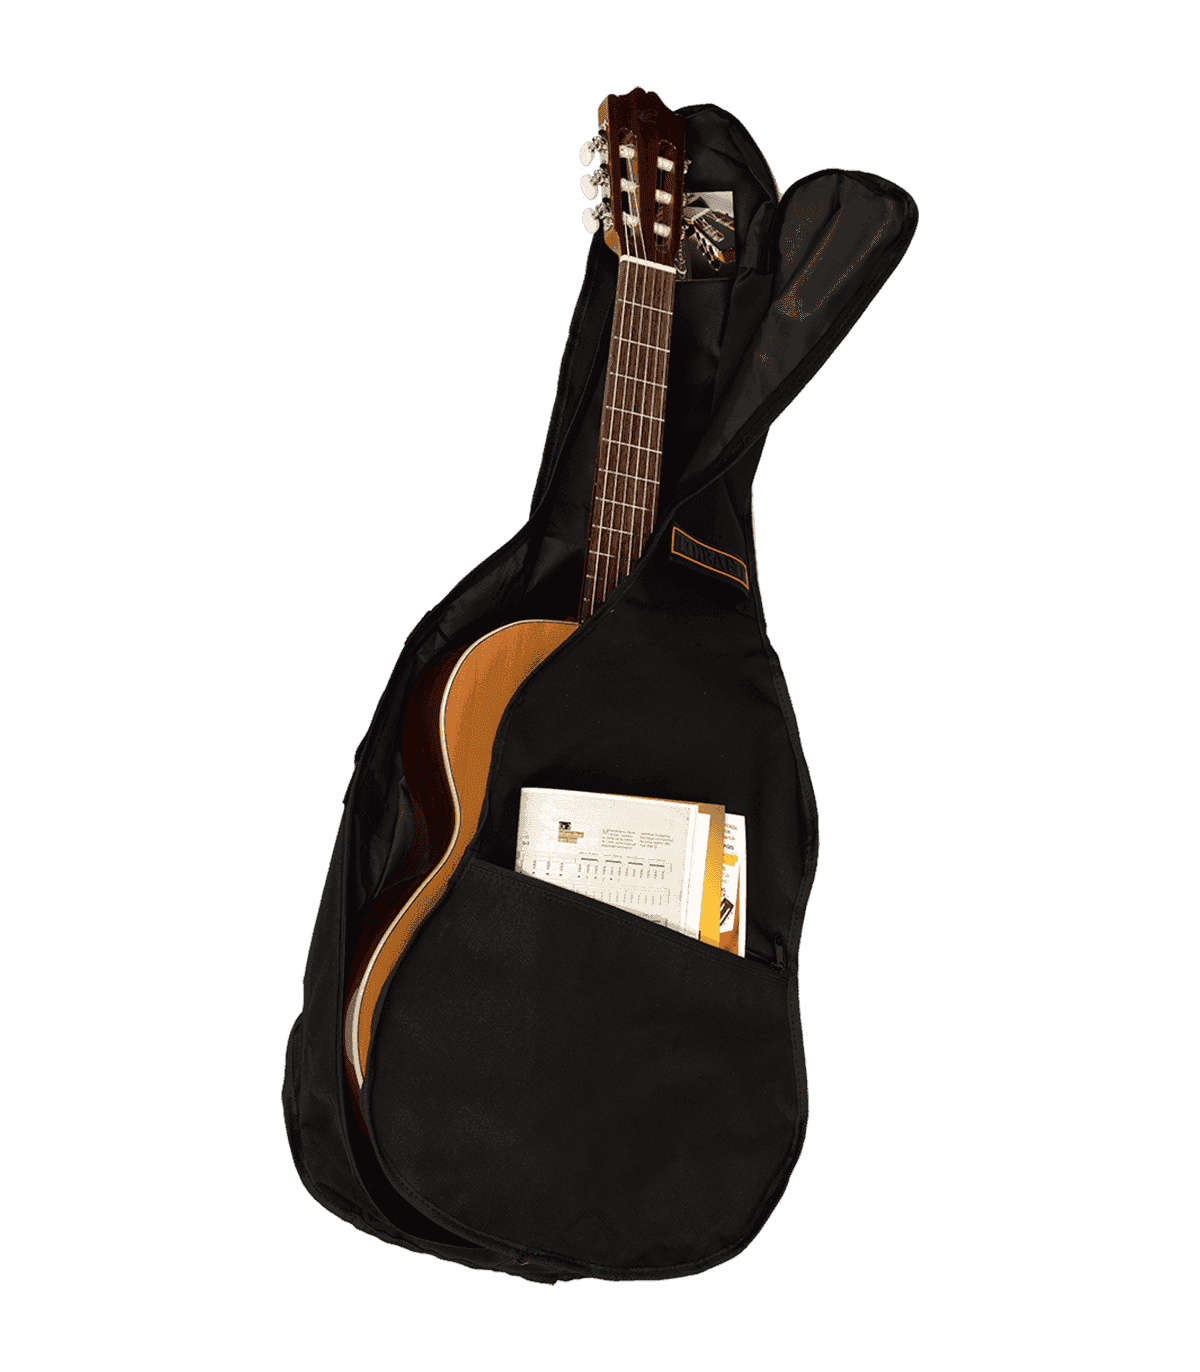 TOBAGO - GB30C - Housse guitare classique 4/4